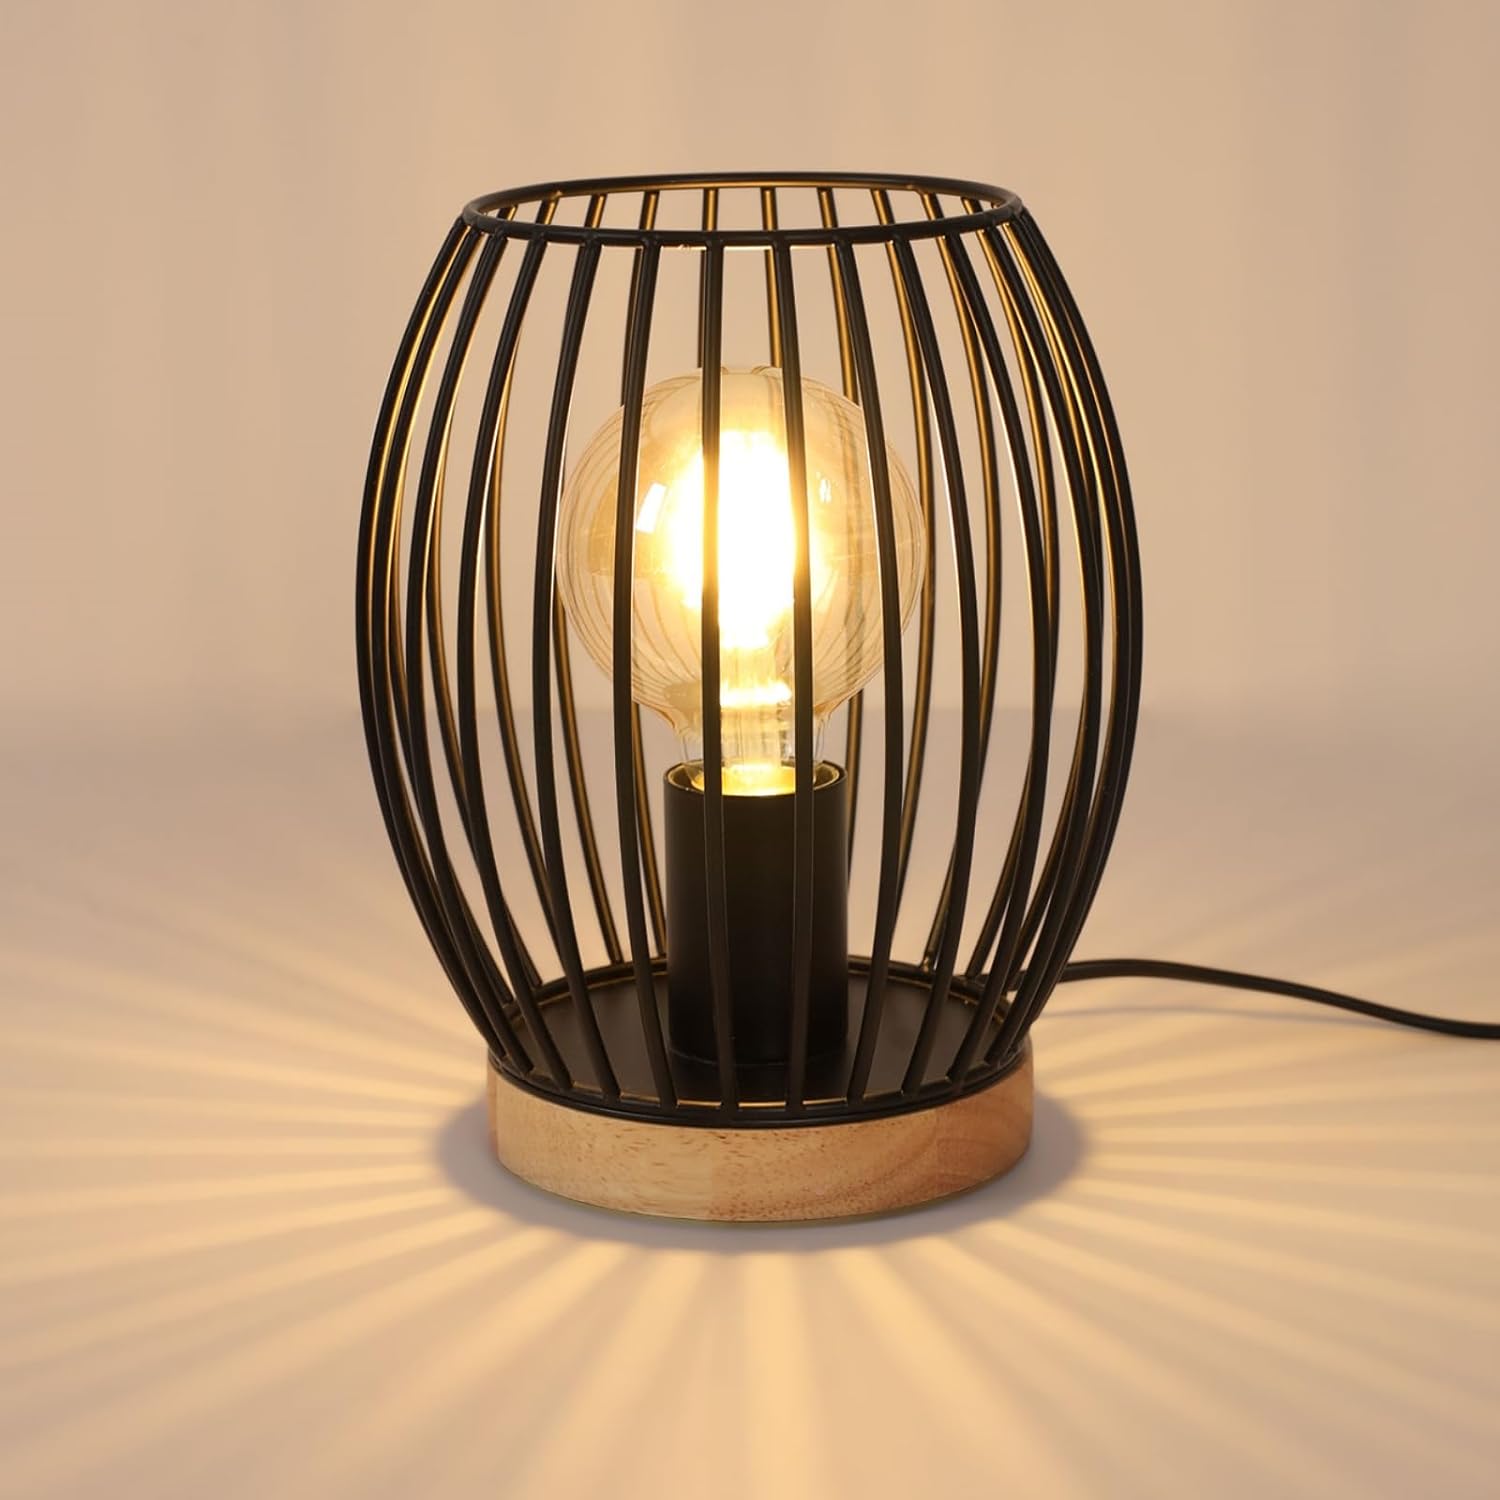 Lampe de chevet design métal filaire noir H 36cm Noir